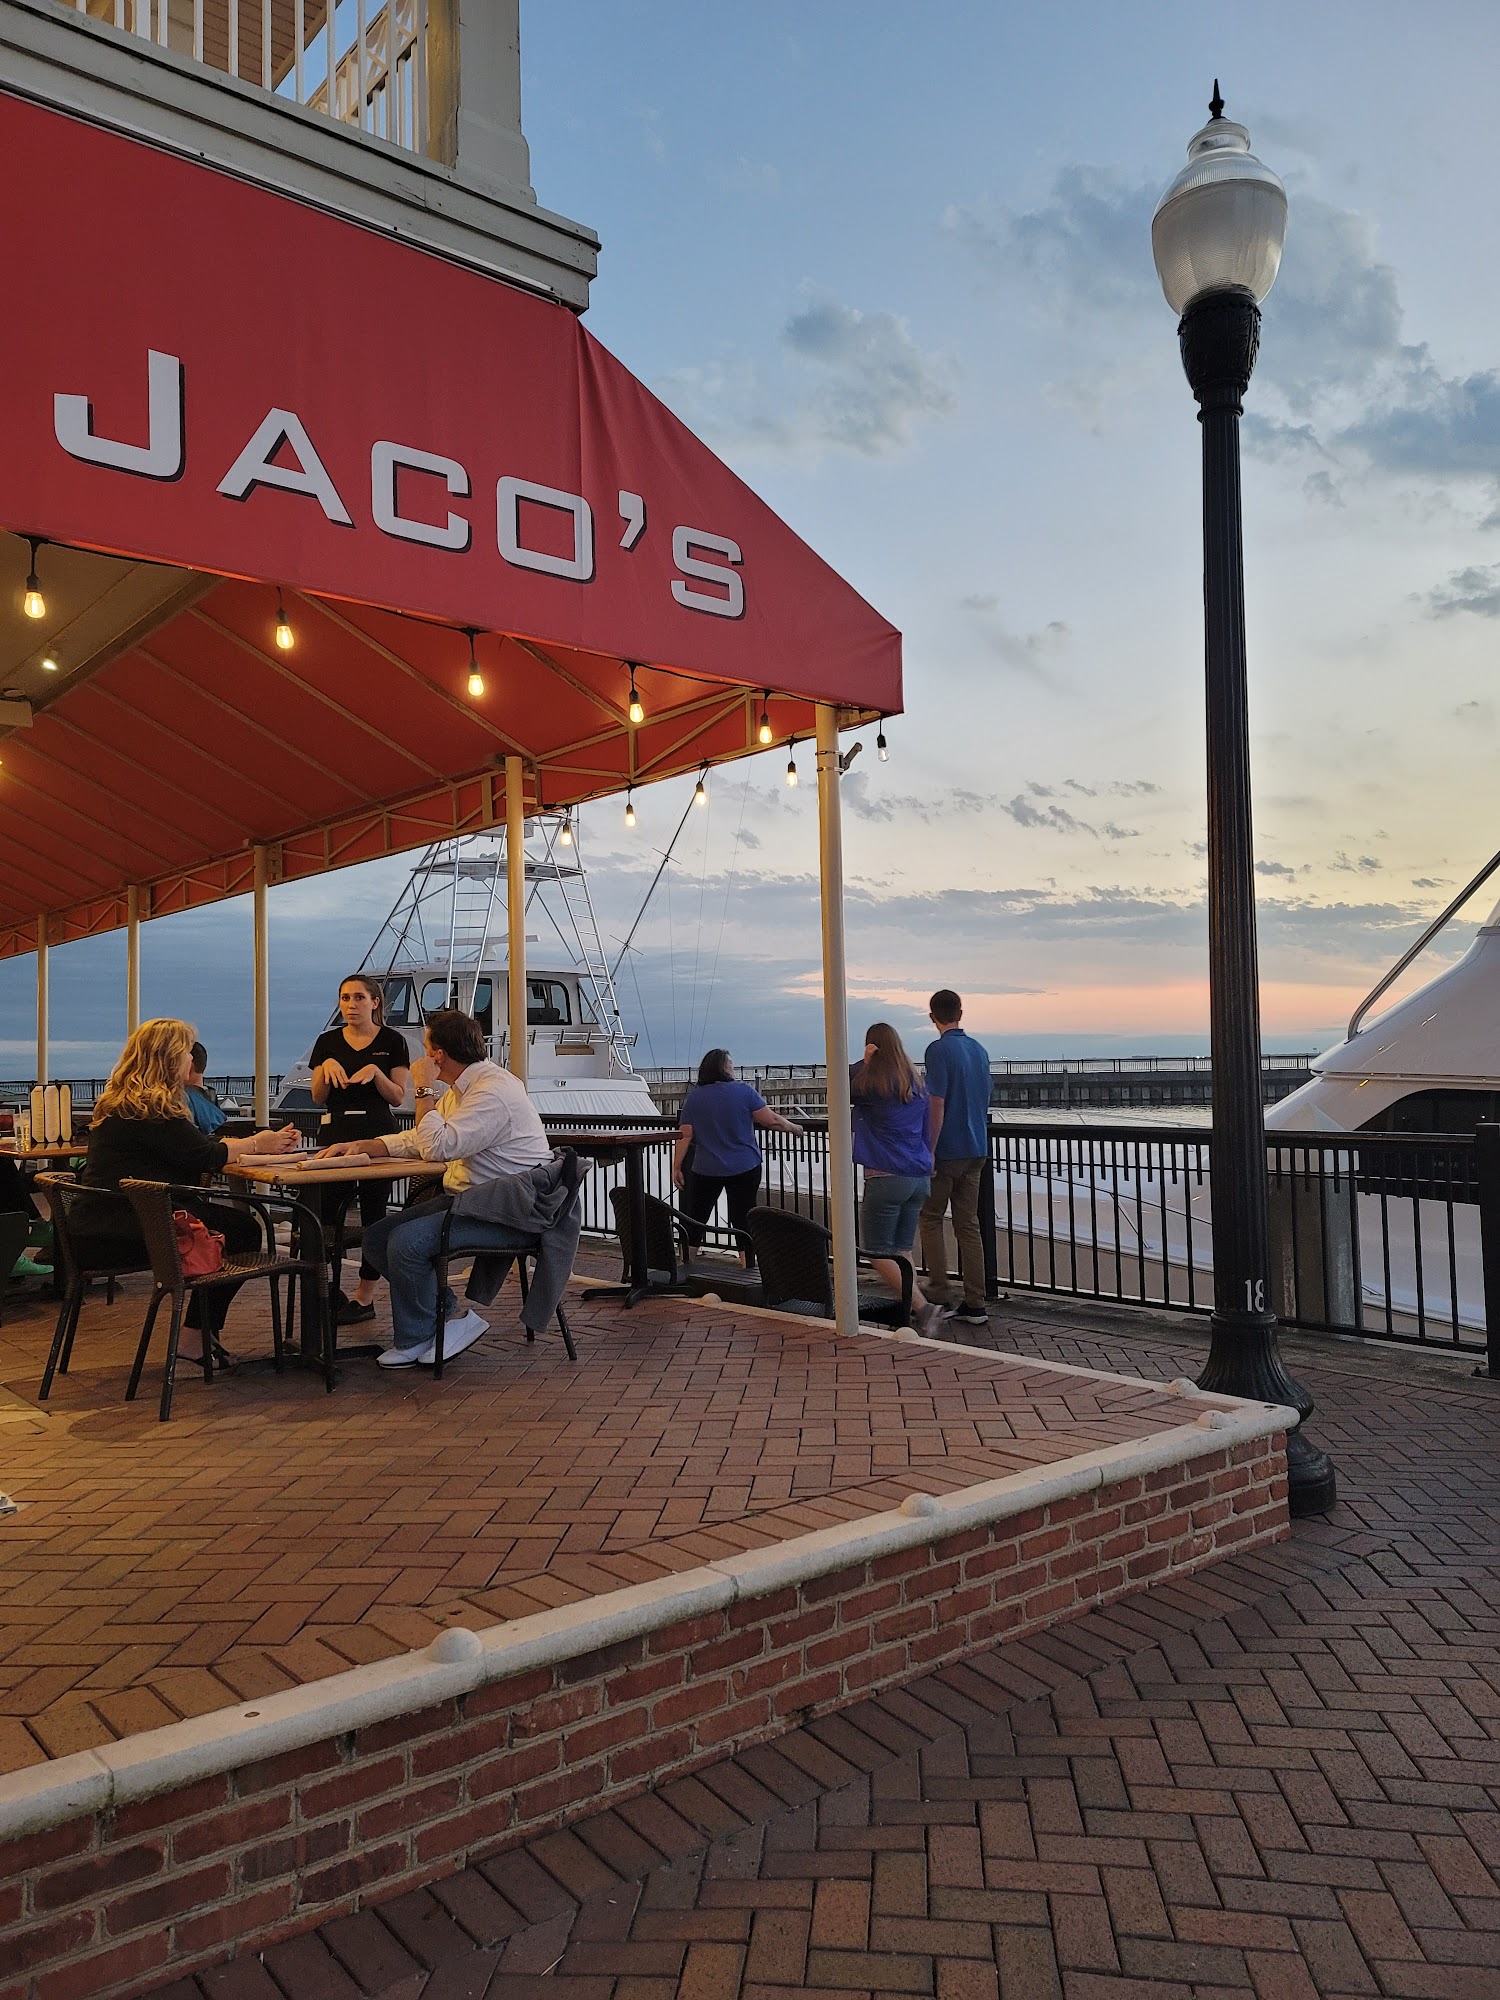 Jaco's Bayfront Bar & Grille